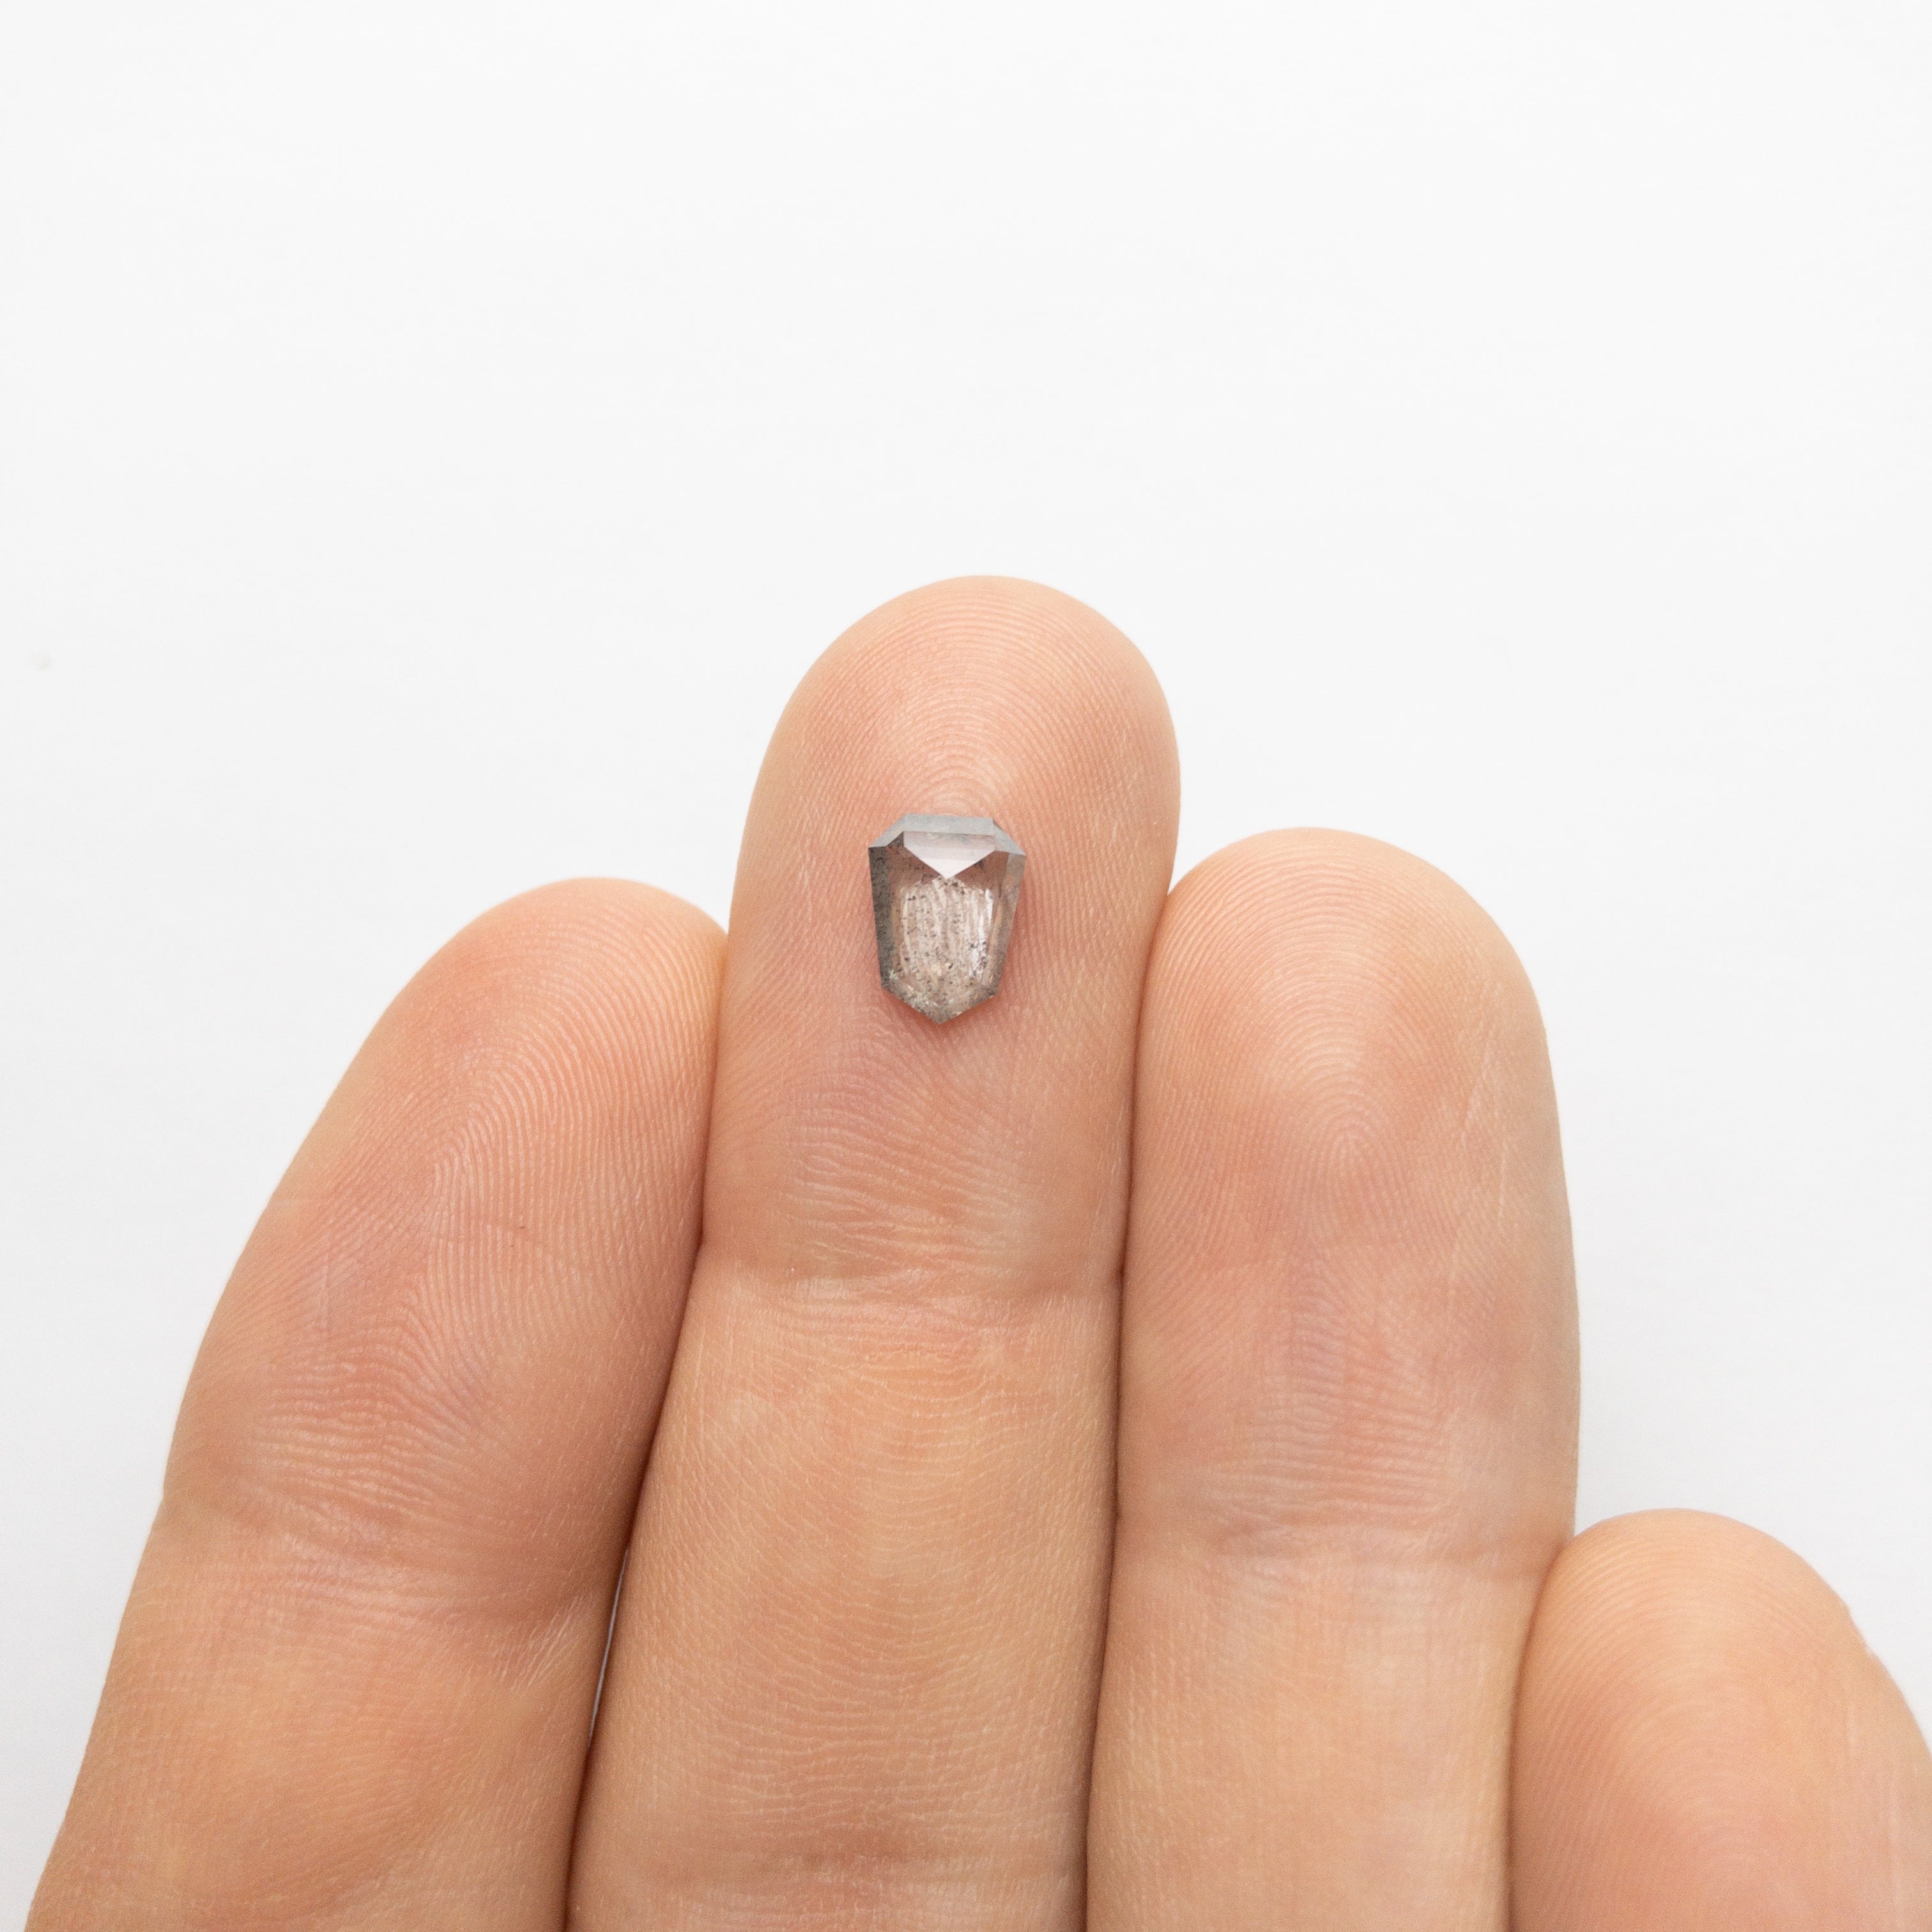 Does this diamond look small? : r/labdiamond